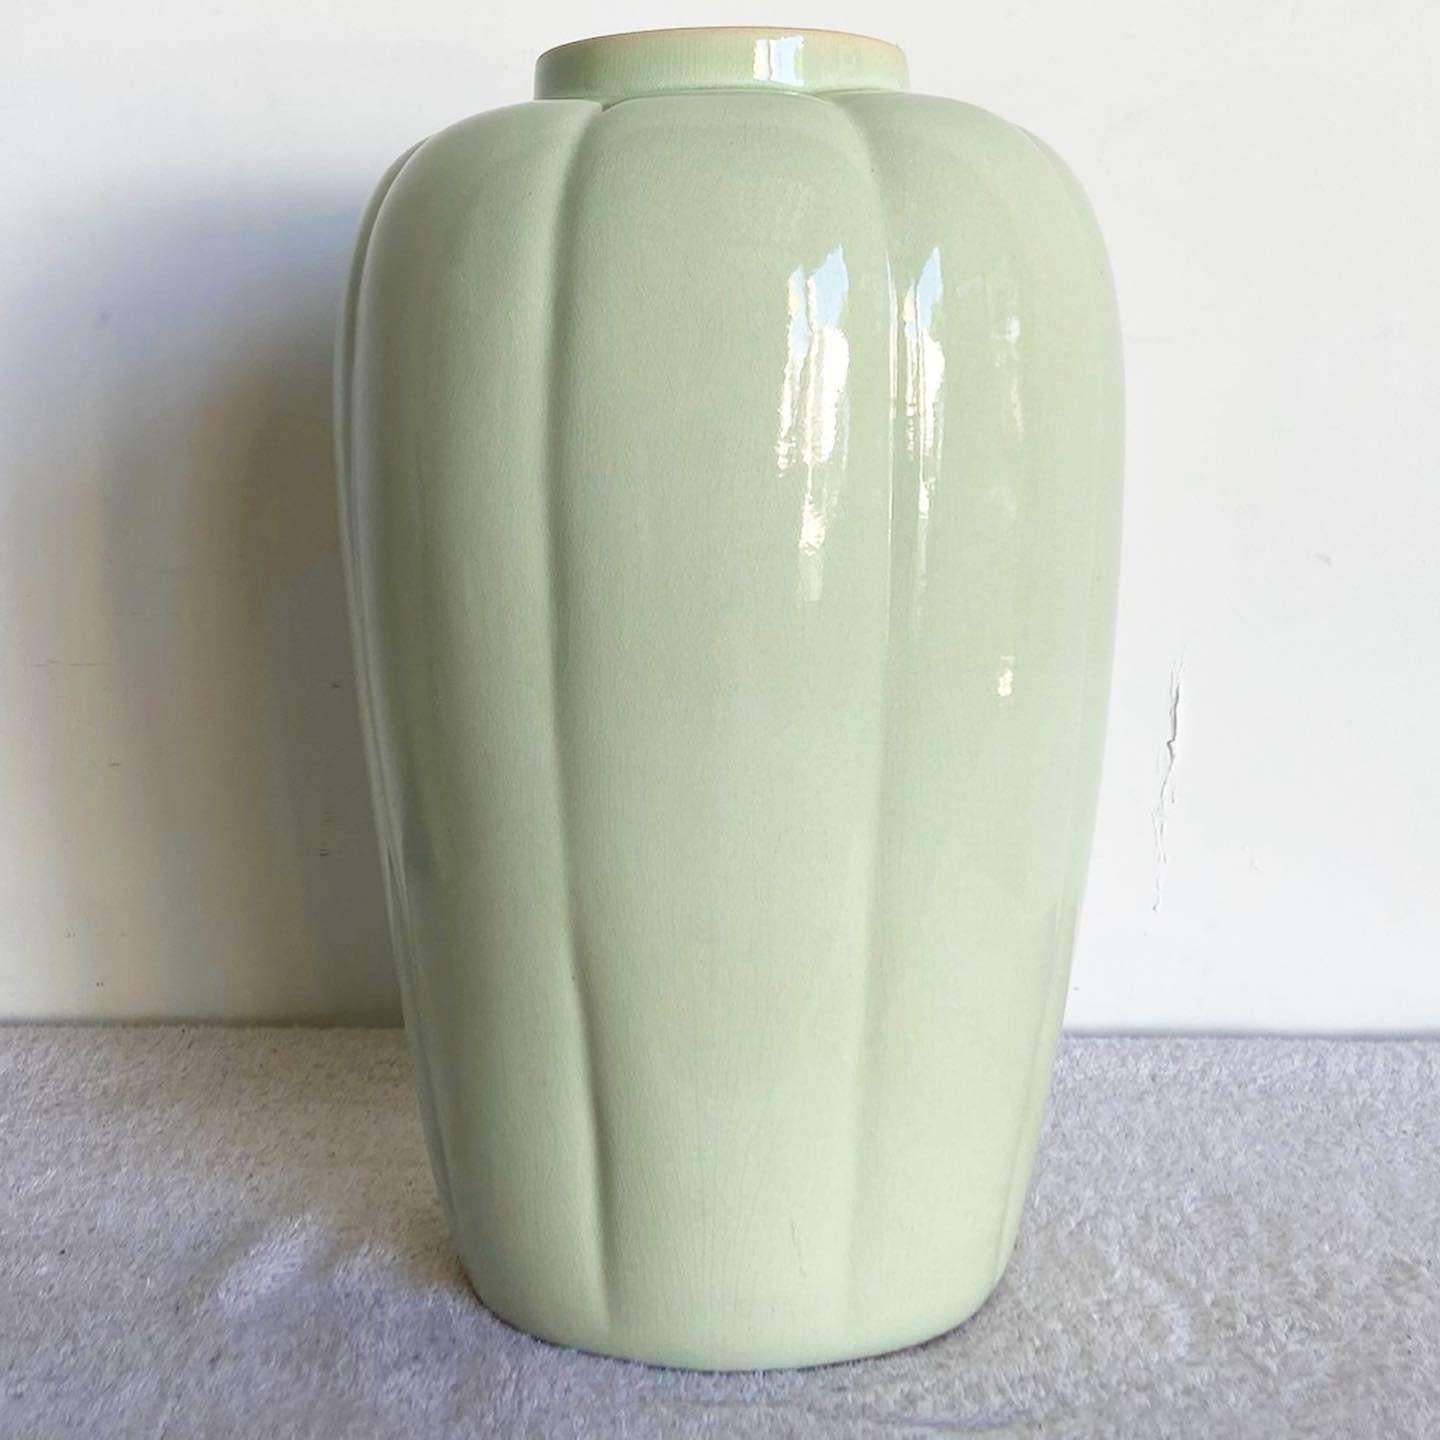 Unglaubliche postmoderne Vintage-Keramikvase. Die Oberfläche ist glänzend grün und hat eine gewellte Form.
